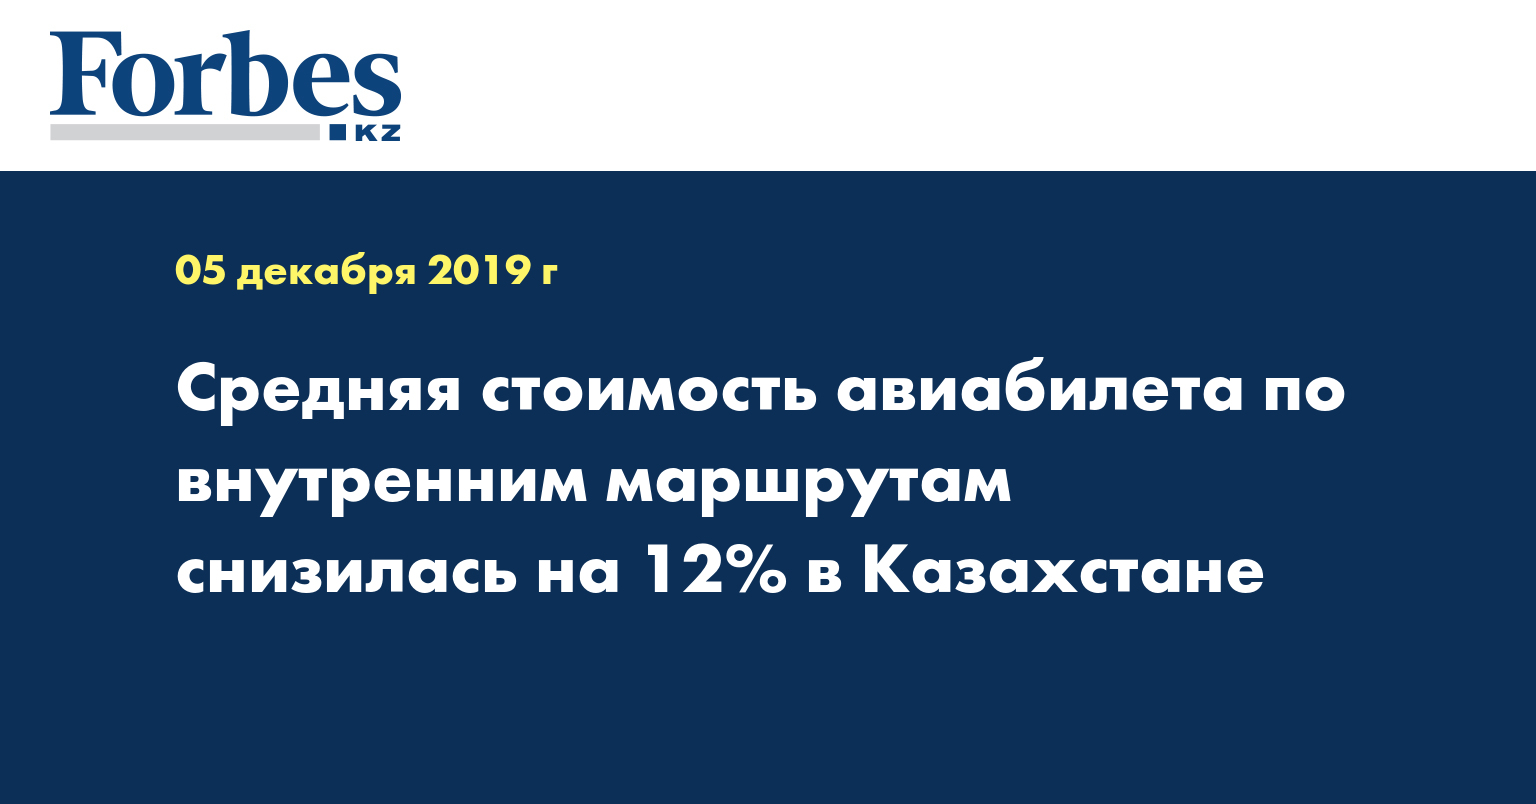 Средняя стоимость авиабилета по внутренним маршрутам снизилась на 12% в Казахстане